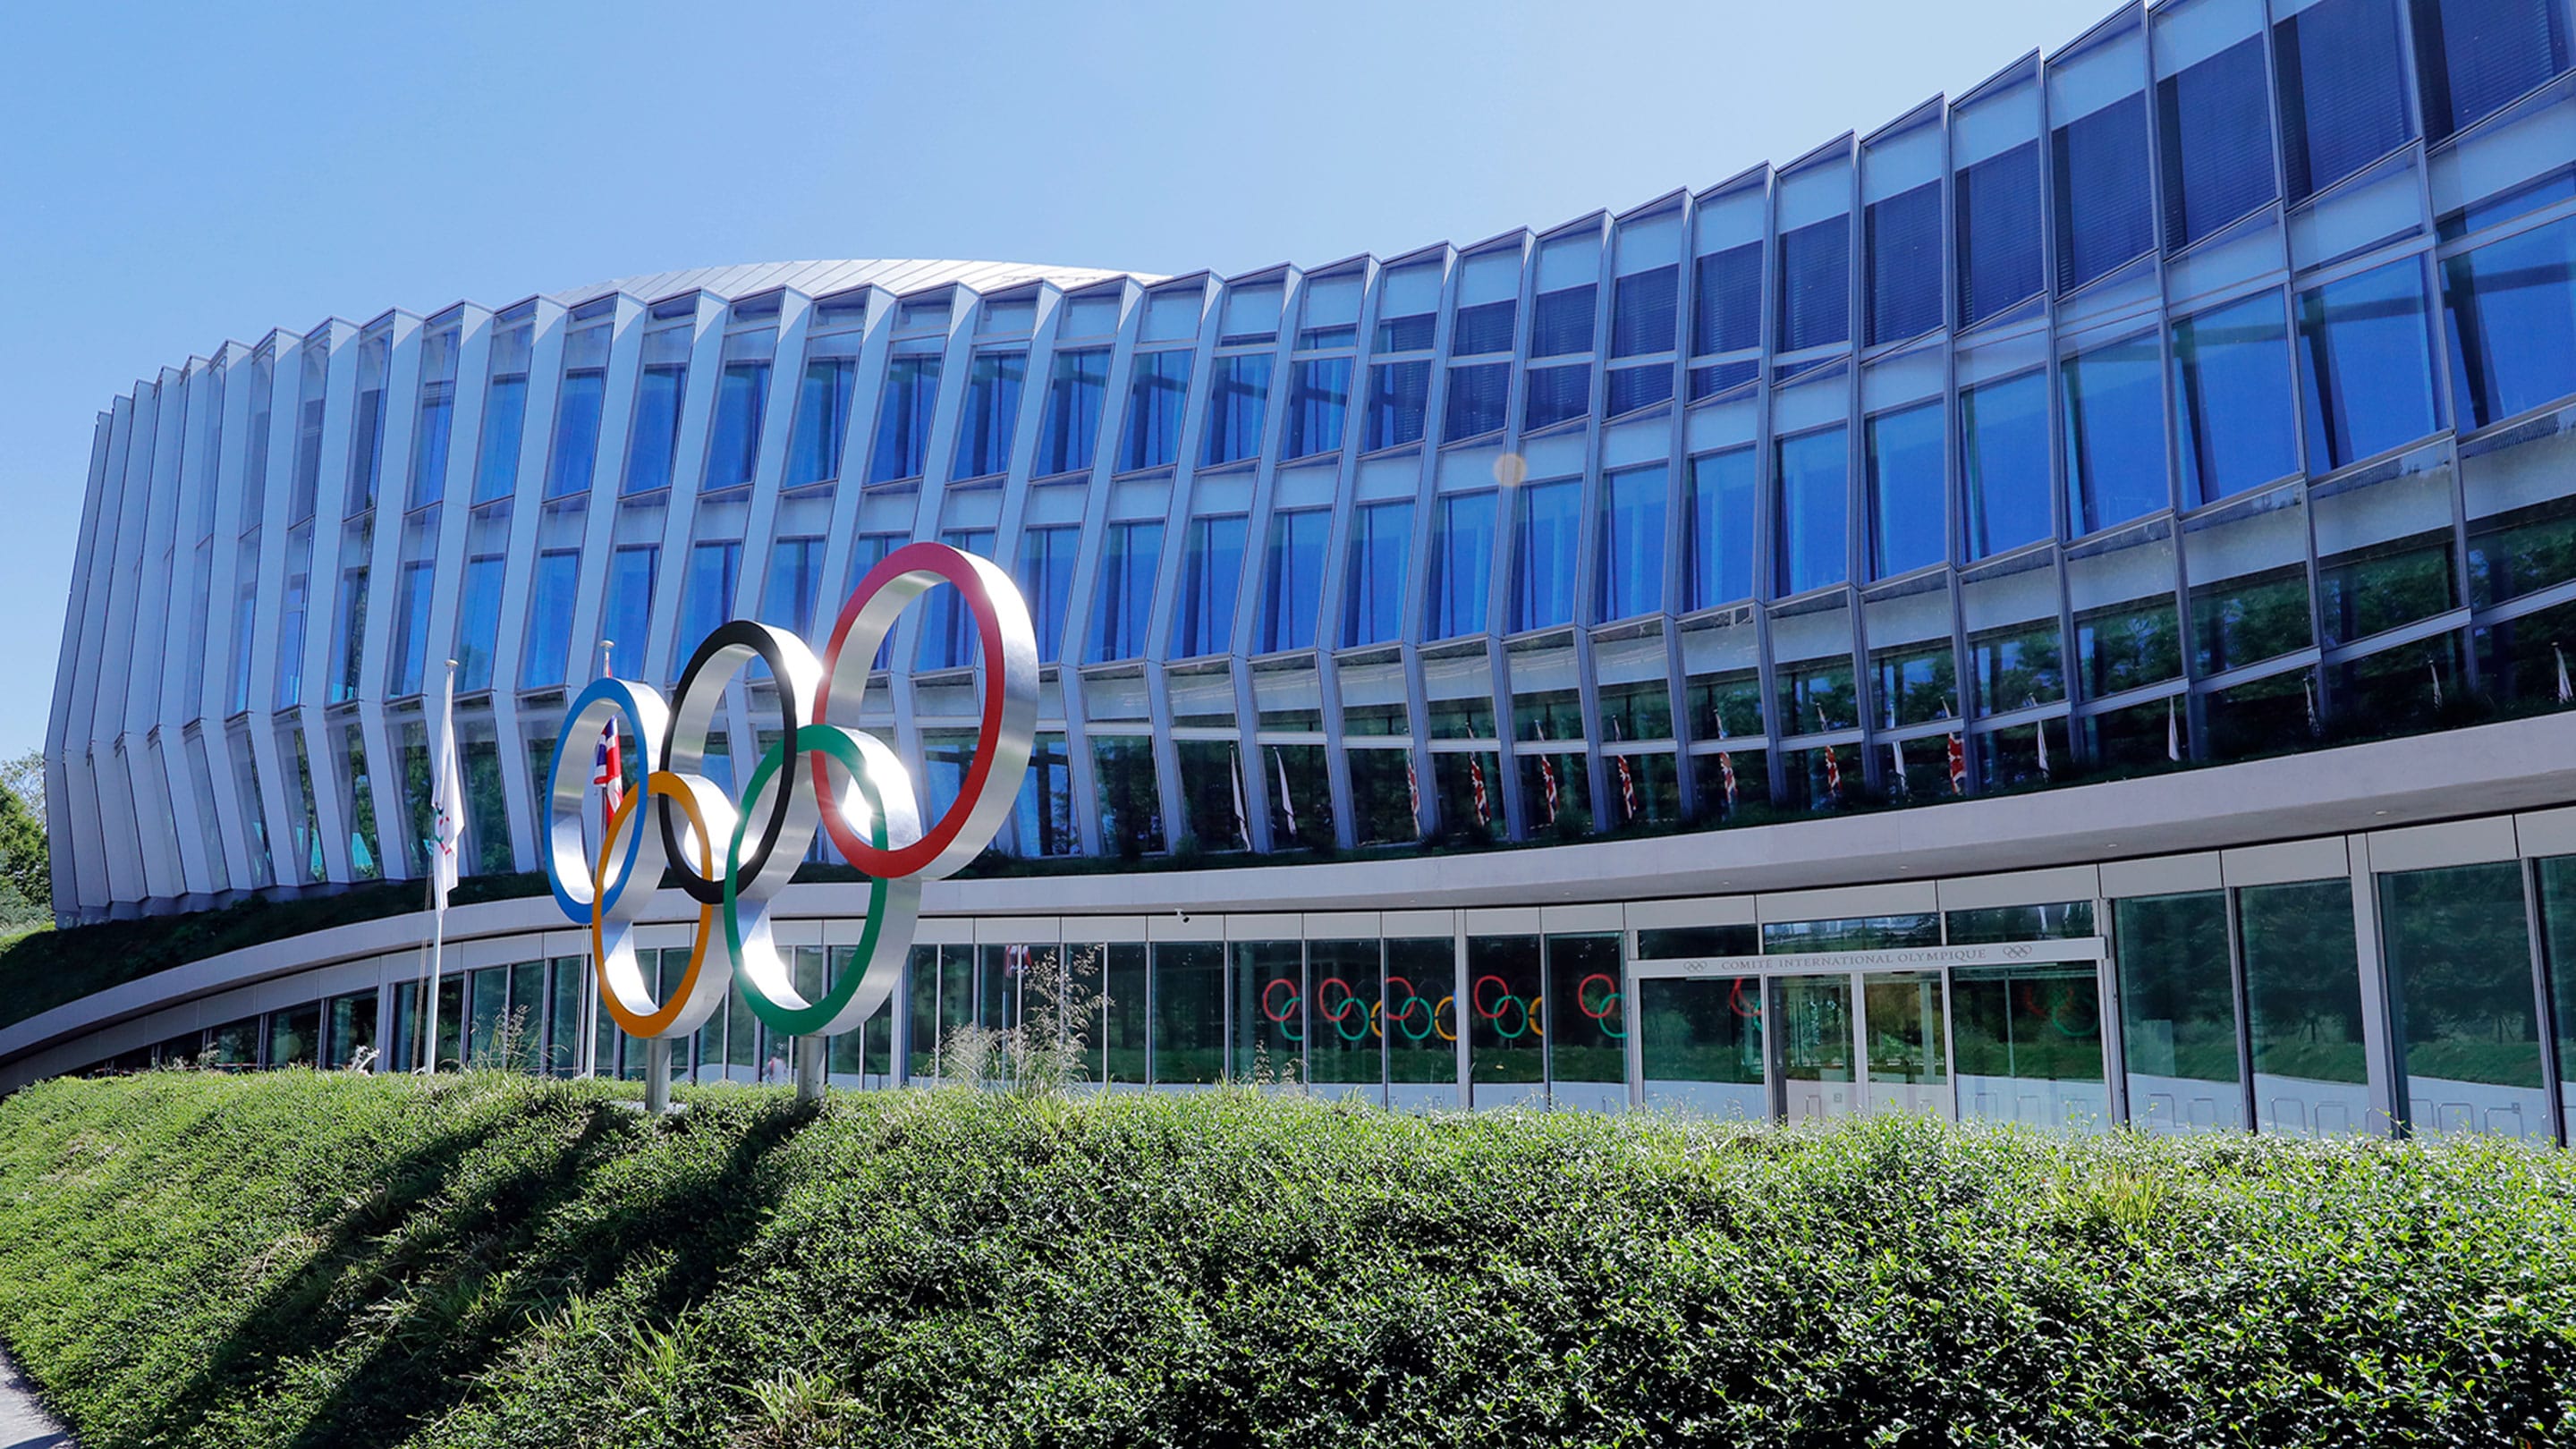 IOC Tak Khawatir Soal Olimpiade Paris 2024 Pasca Kerusuhan di Final Champions League